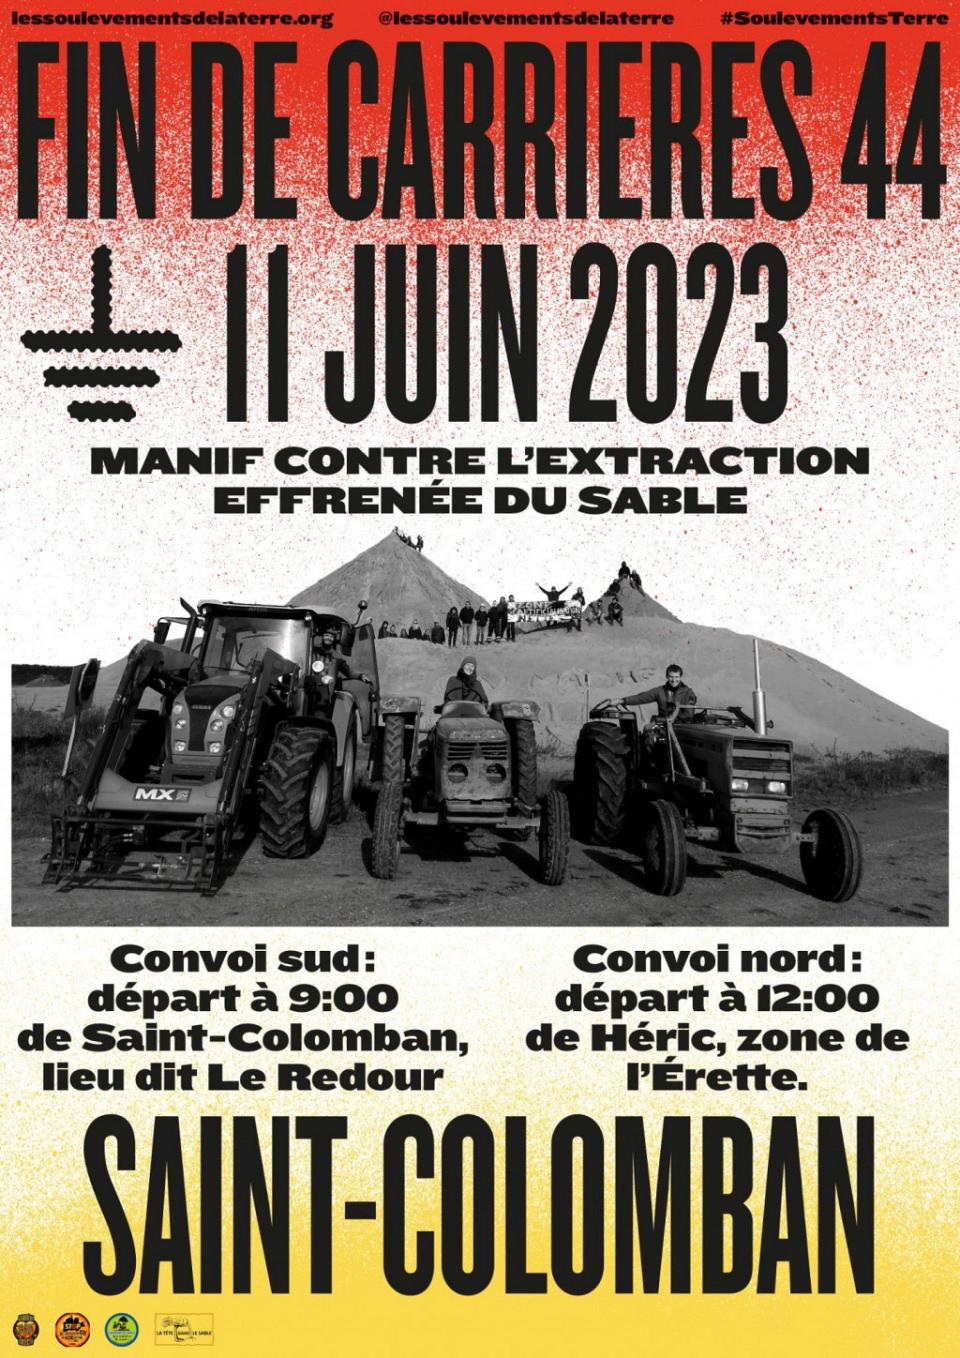 Affiche d'une manifestation contre les carrières de sable de Saint-Colomban le 11 juin 2023.